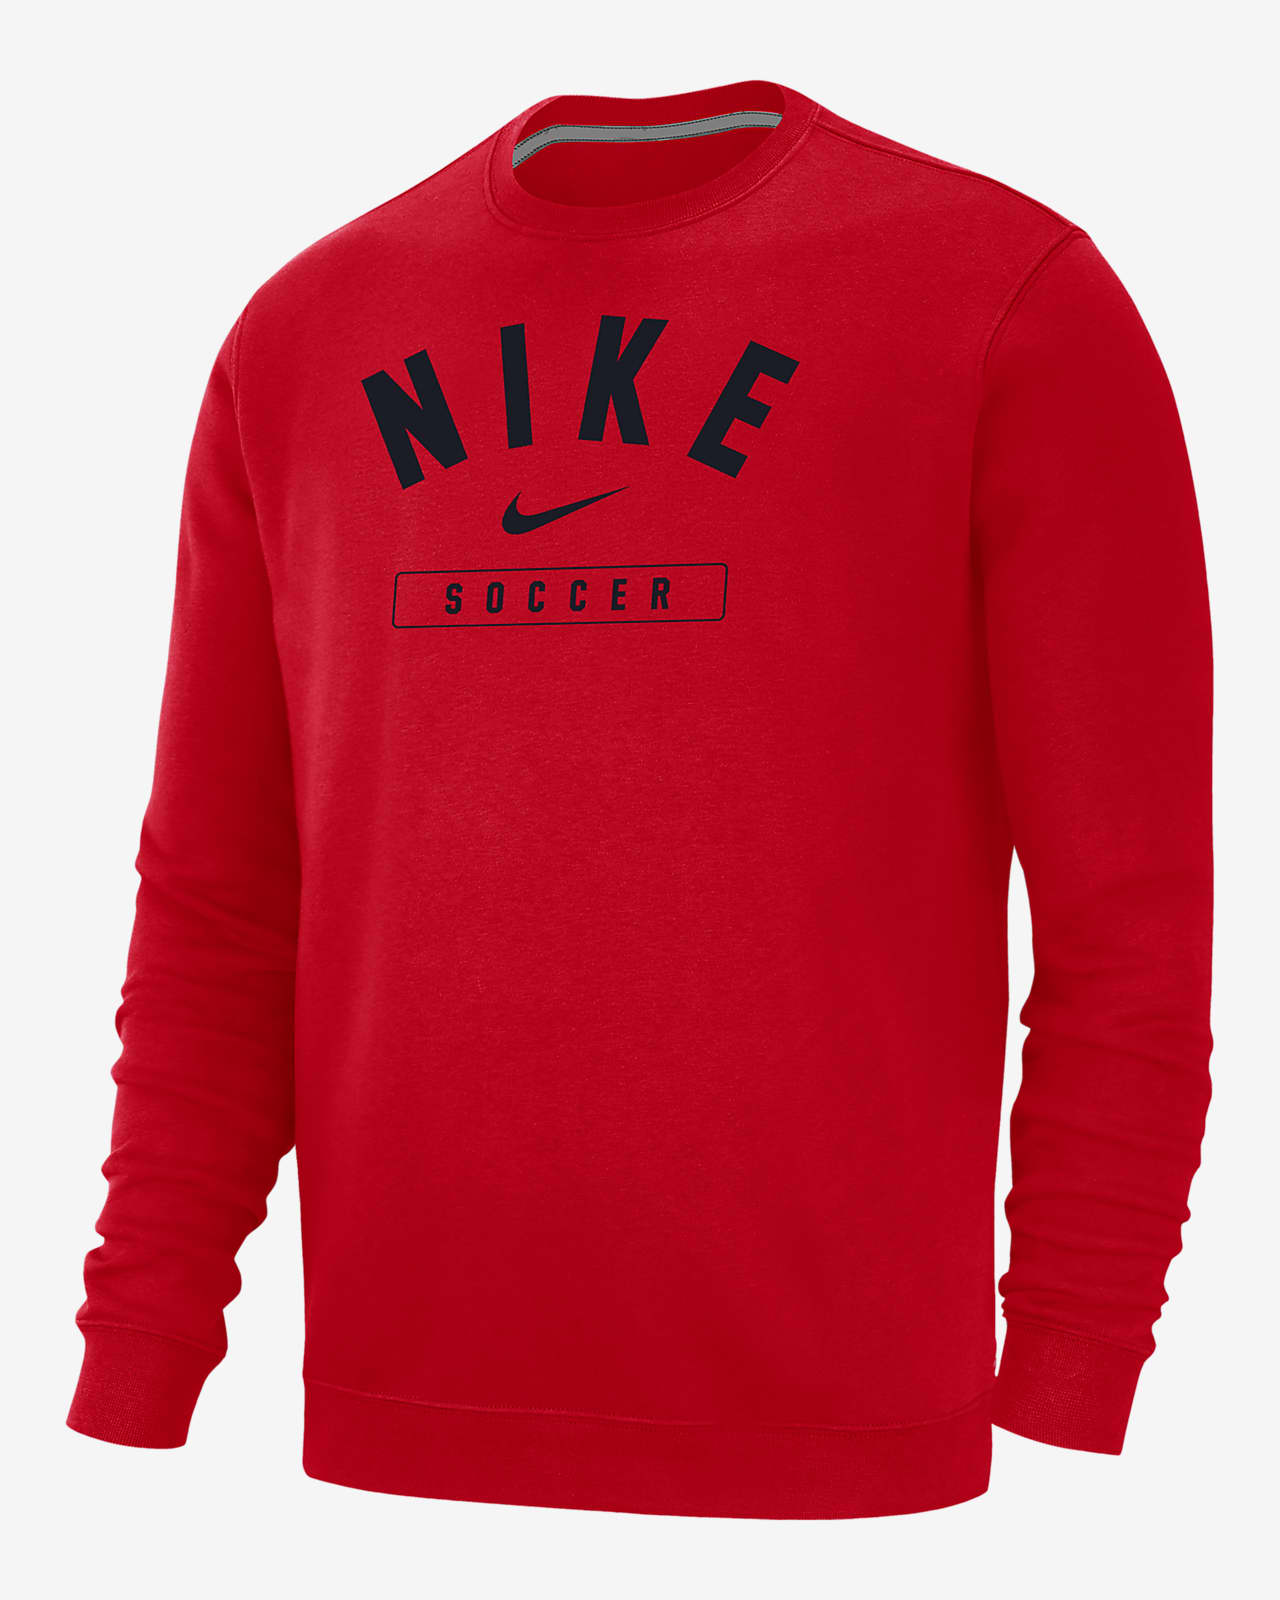 Nike Soccer Men's Crew-Neck Sweatshirt